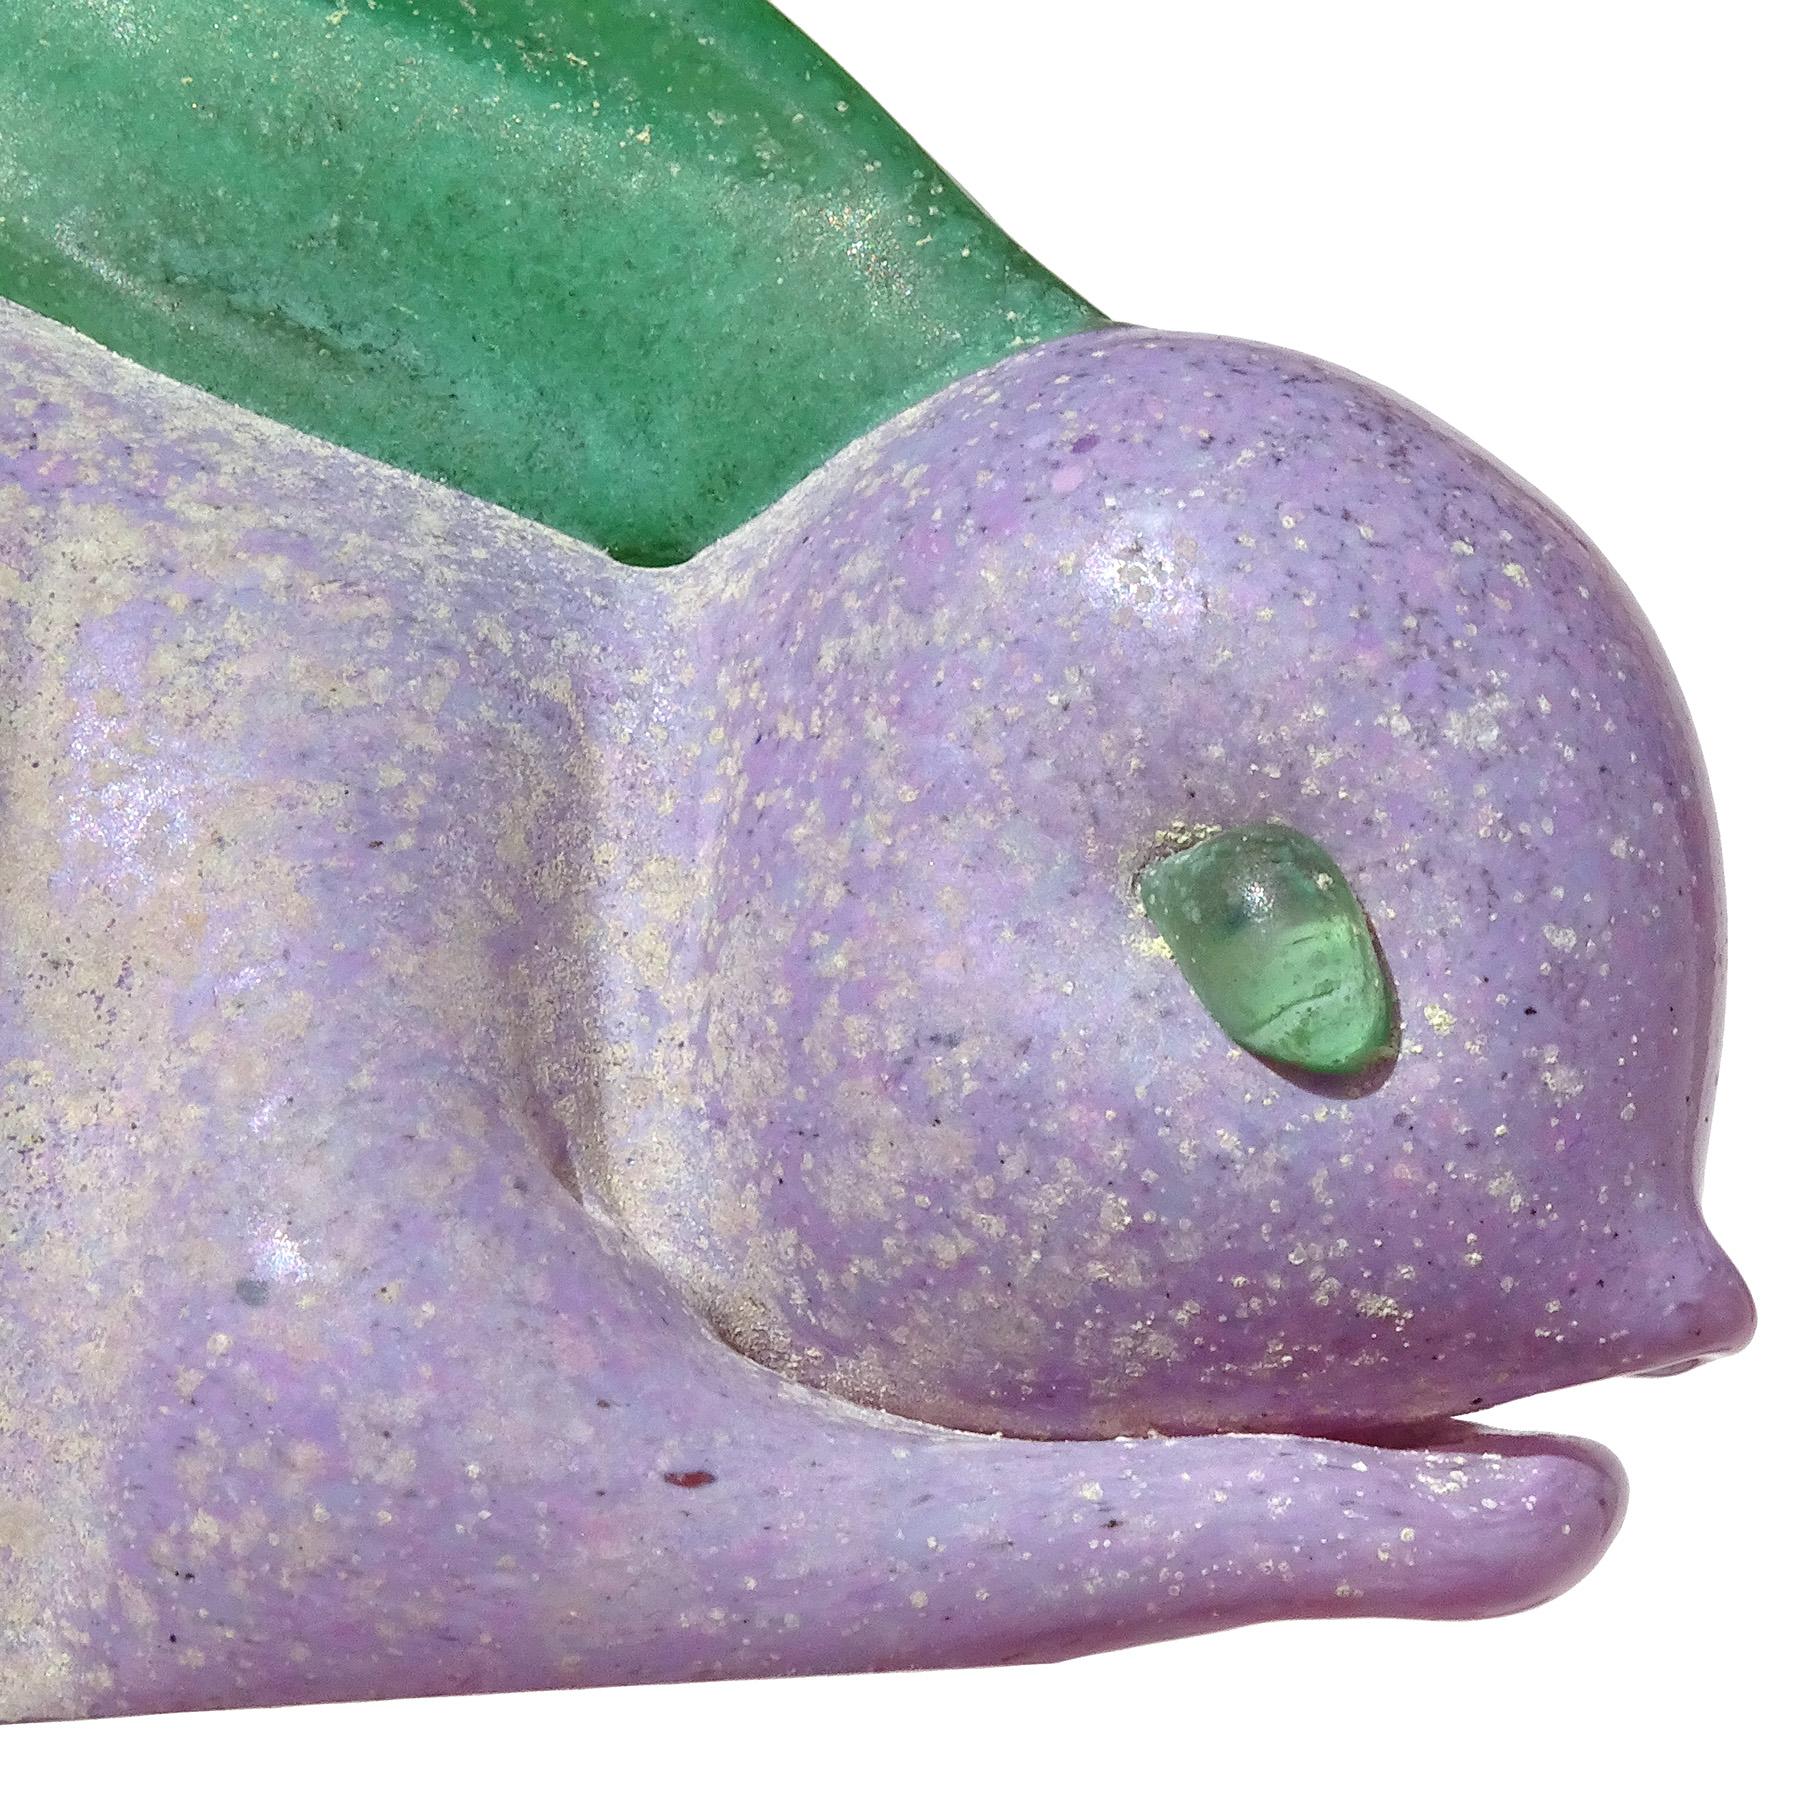 Magnifique presse-papier / figurine de lapin en verre d'art italien soufflé à la main à Murano, de couleur violette, bleue et verte. La pièce est documentée comme provenant de la société Gambaro & Poggi, avec un original 